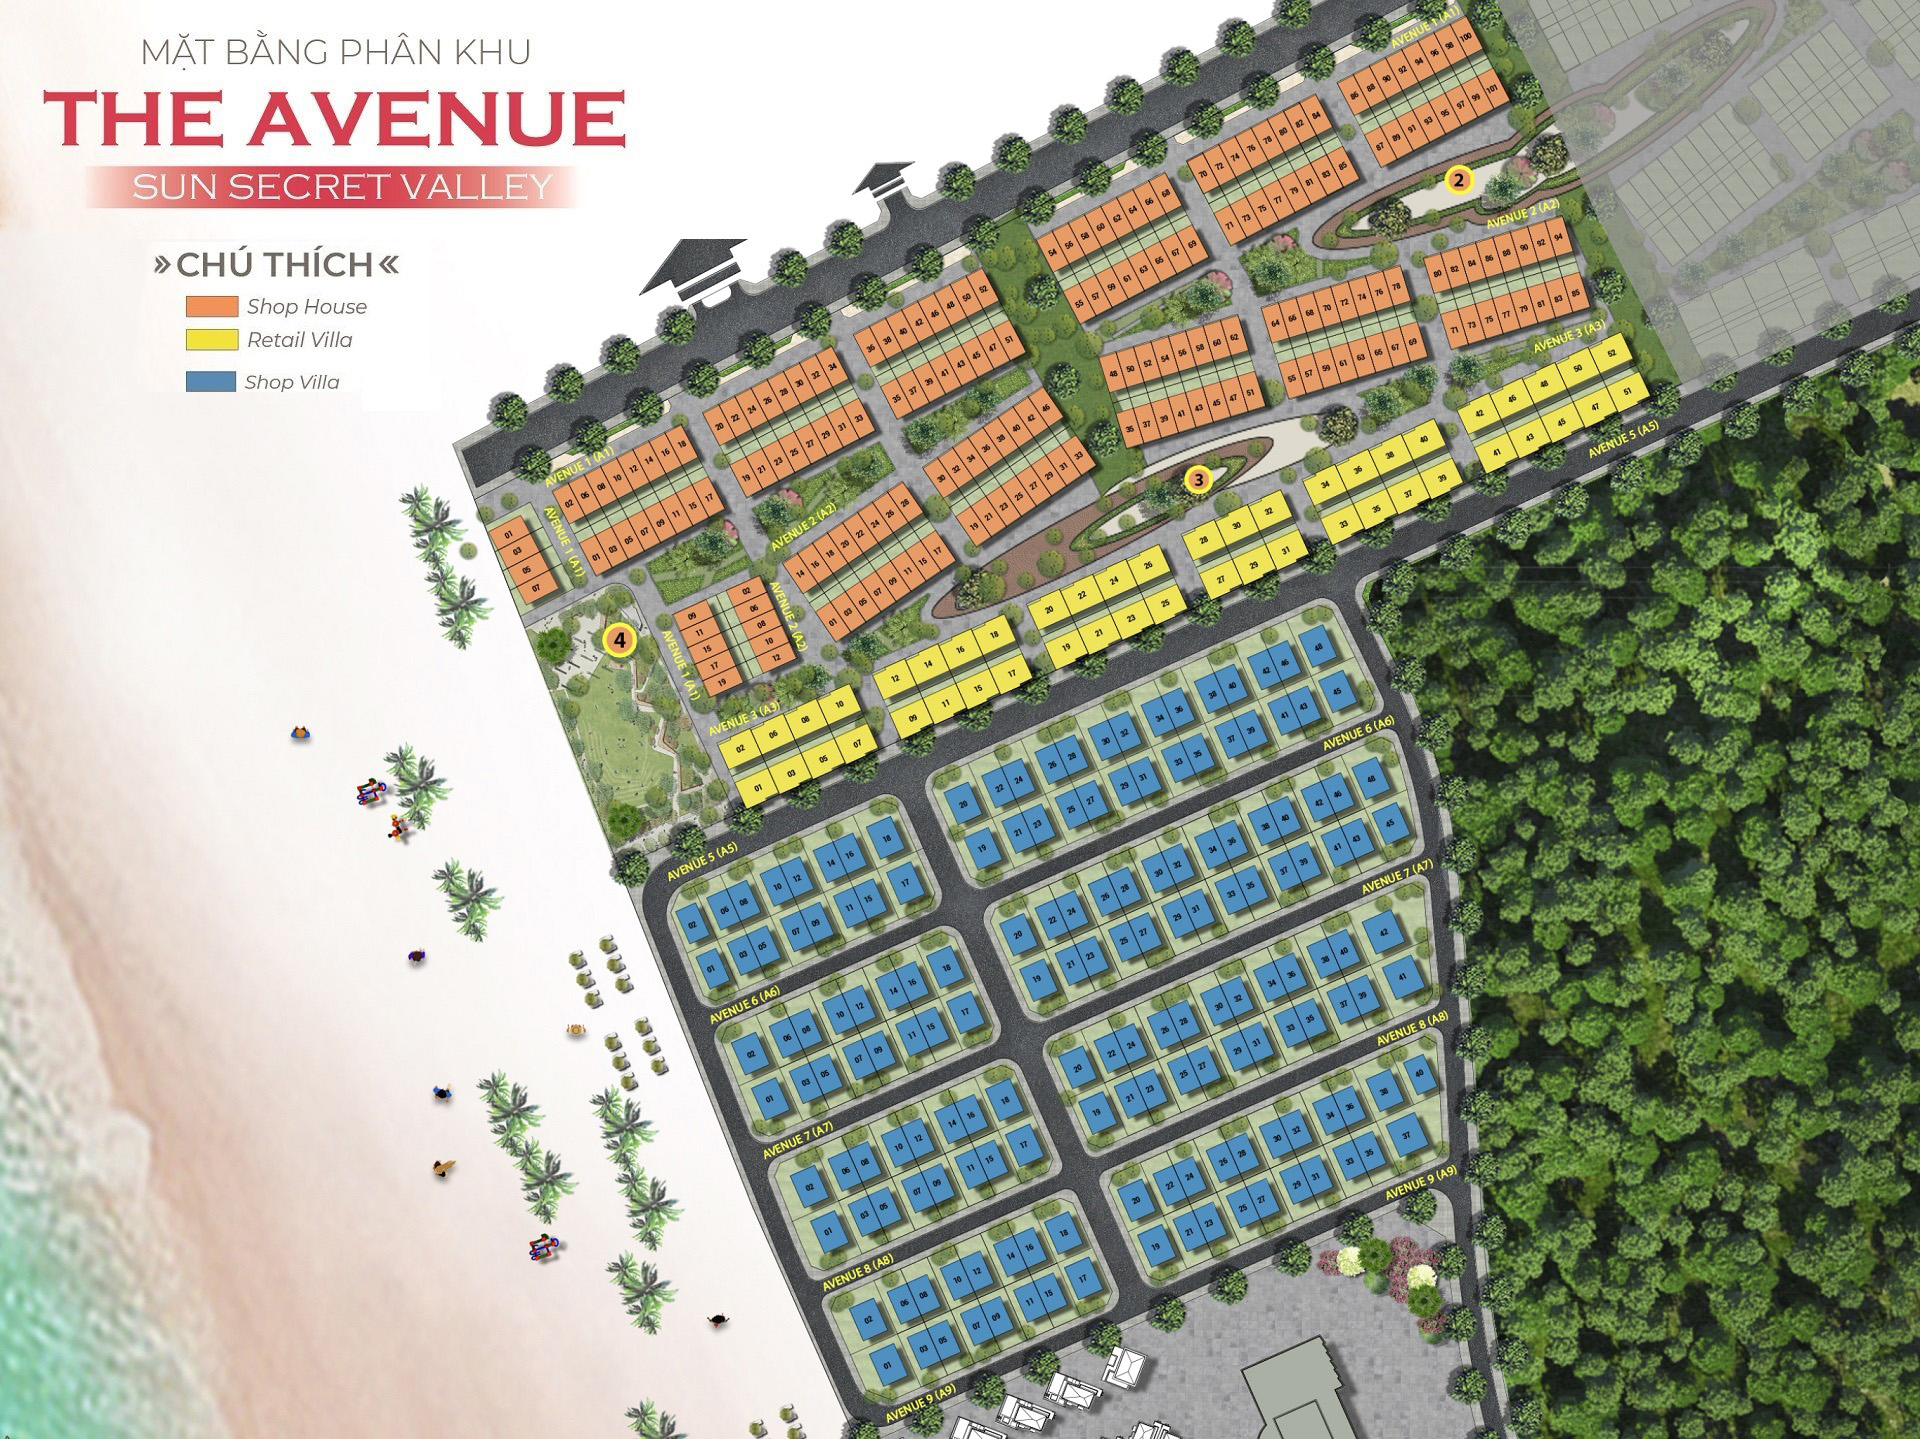 Mặt bằng lô số phân khu The Avenue dự án Sun Secret Valley Phú Quốc giai đoạn 1